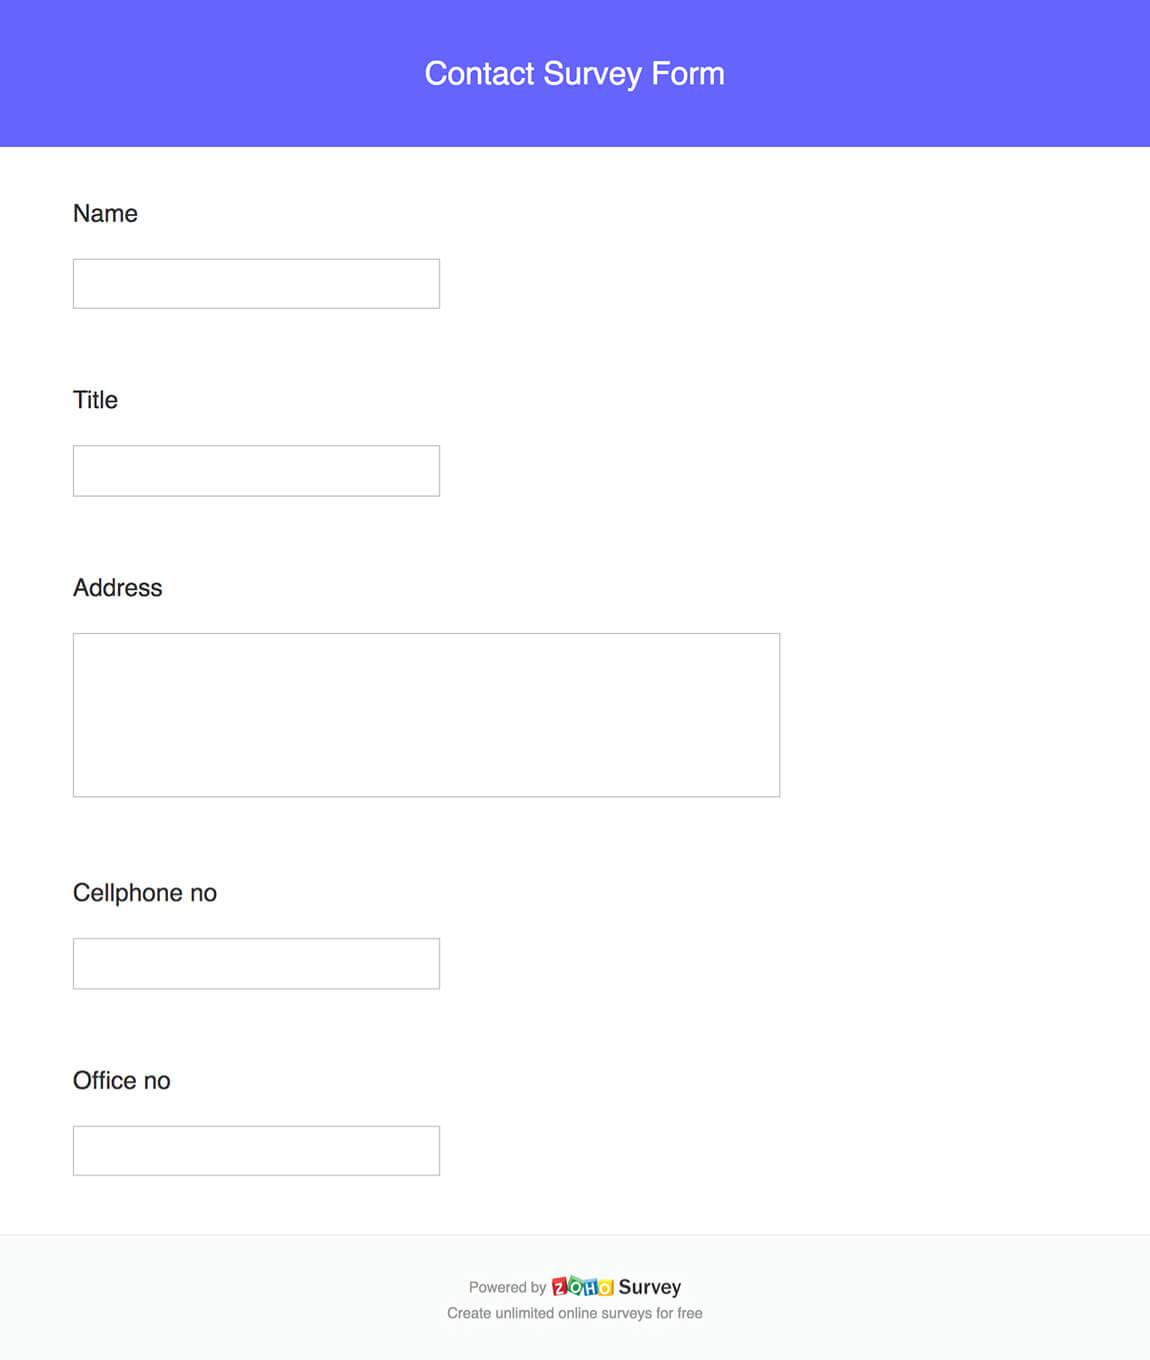 Contact survey form questionnaire template